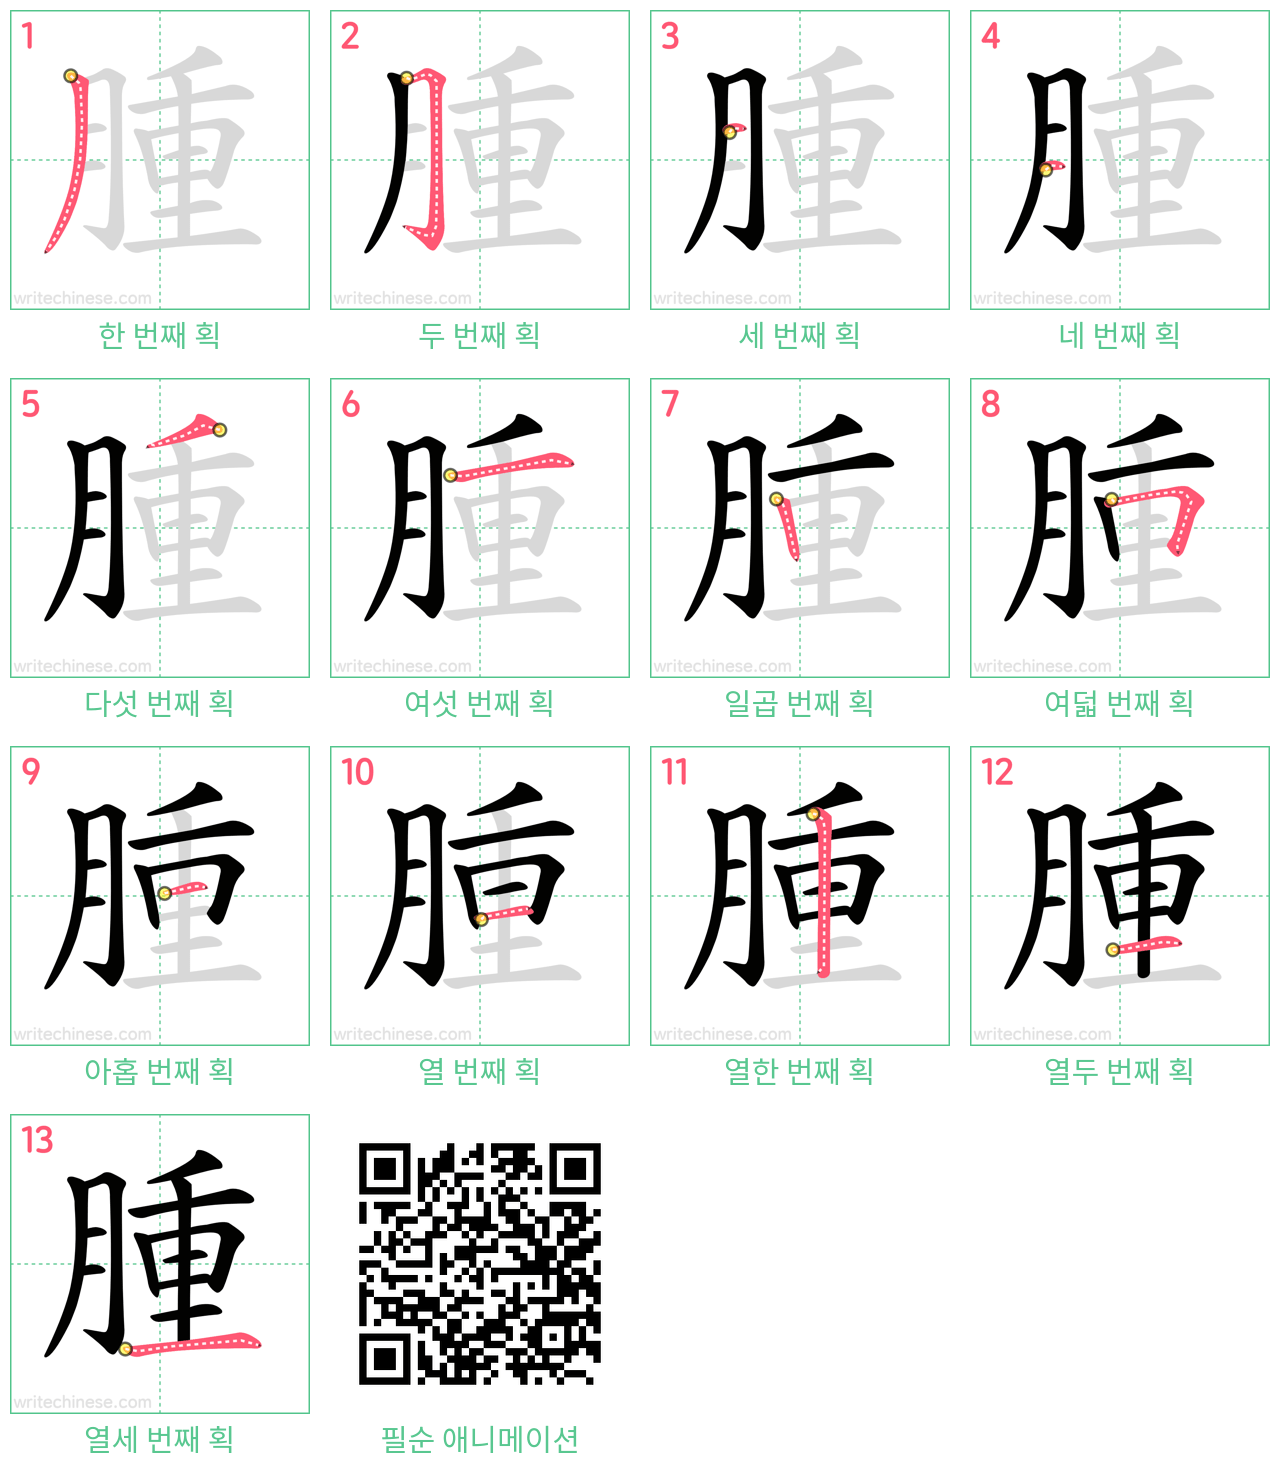 腫 step-by-step stroke order diagrams